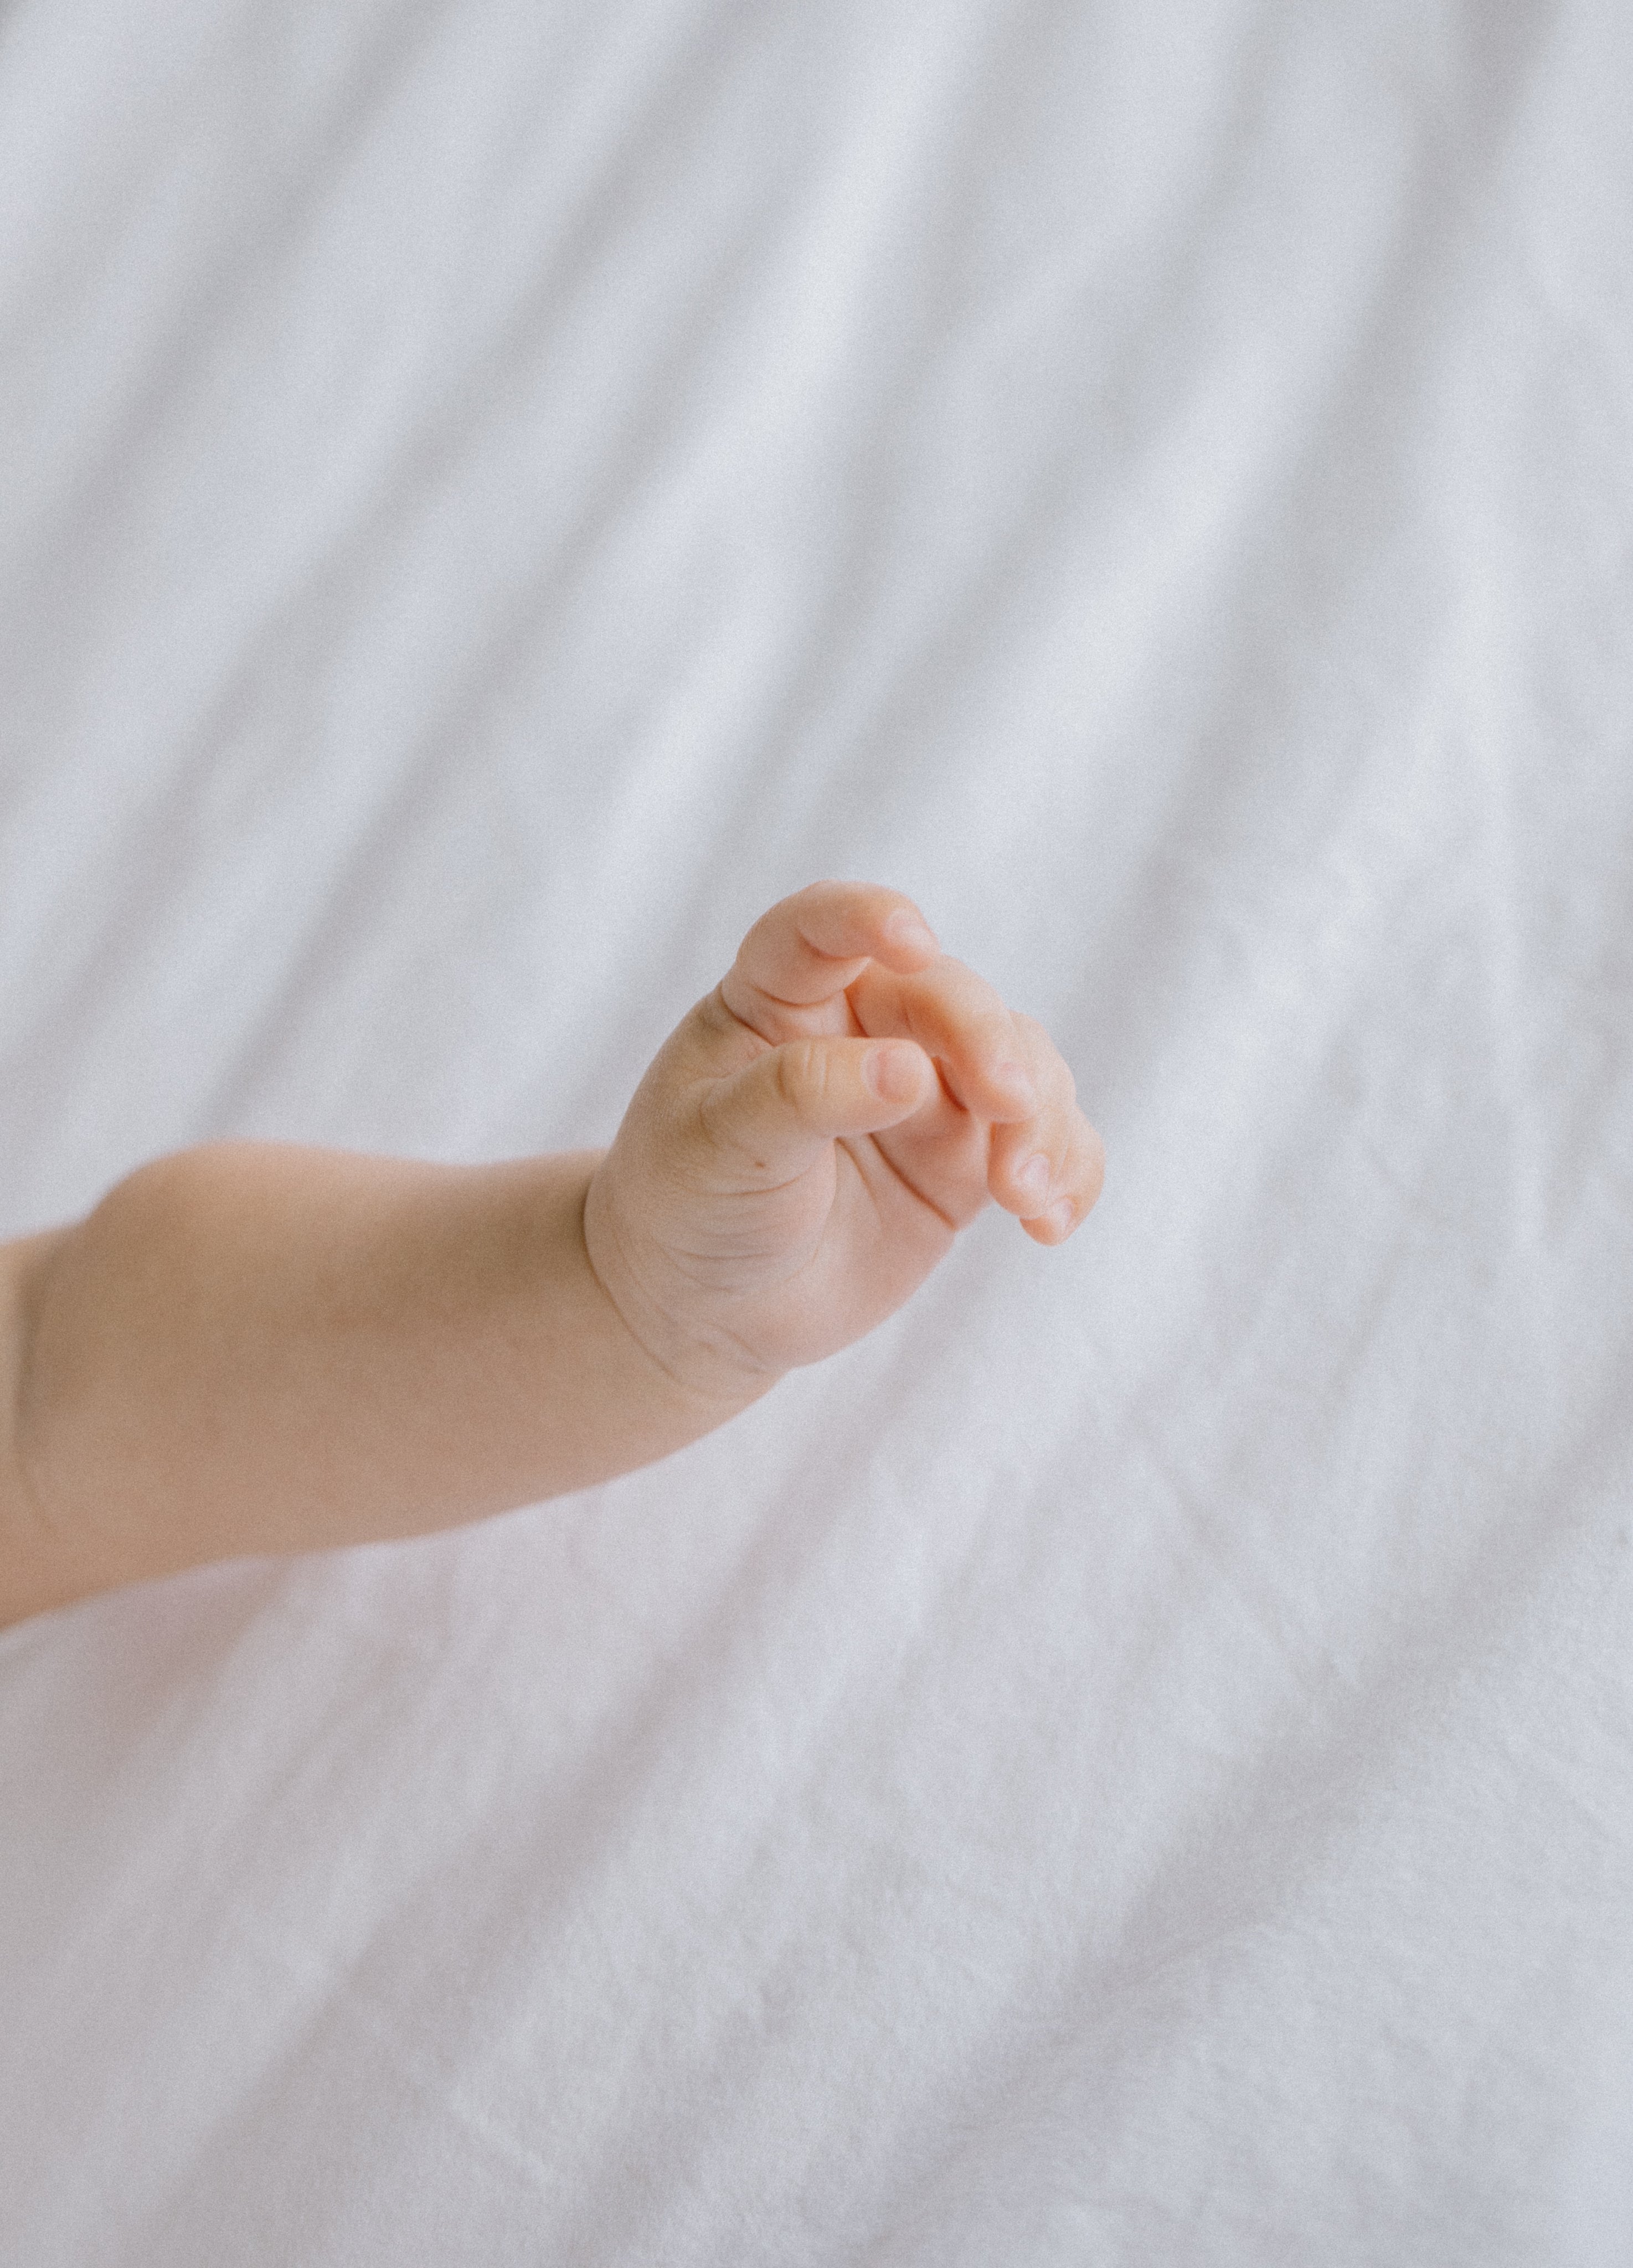 hand-of-newborn-baby-against-white-fabric.jpg